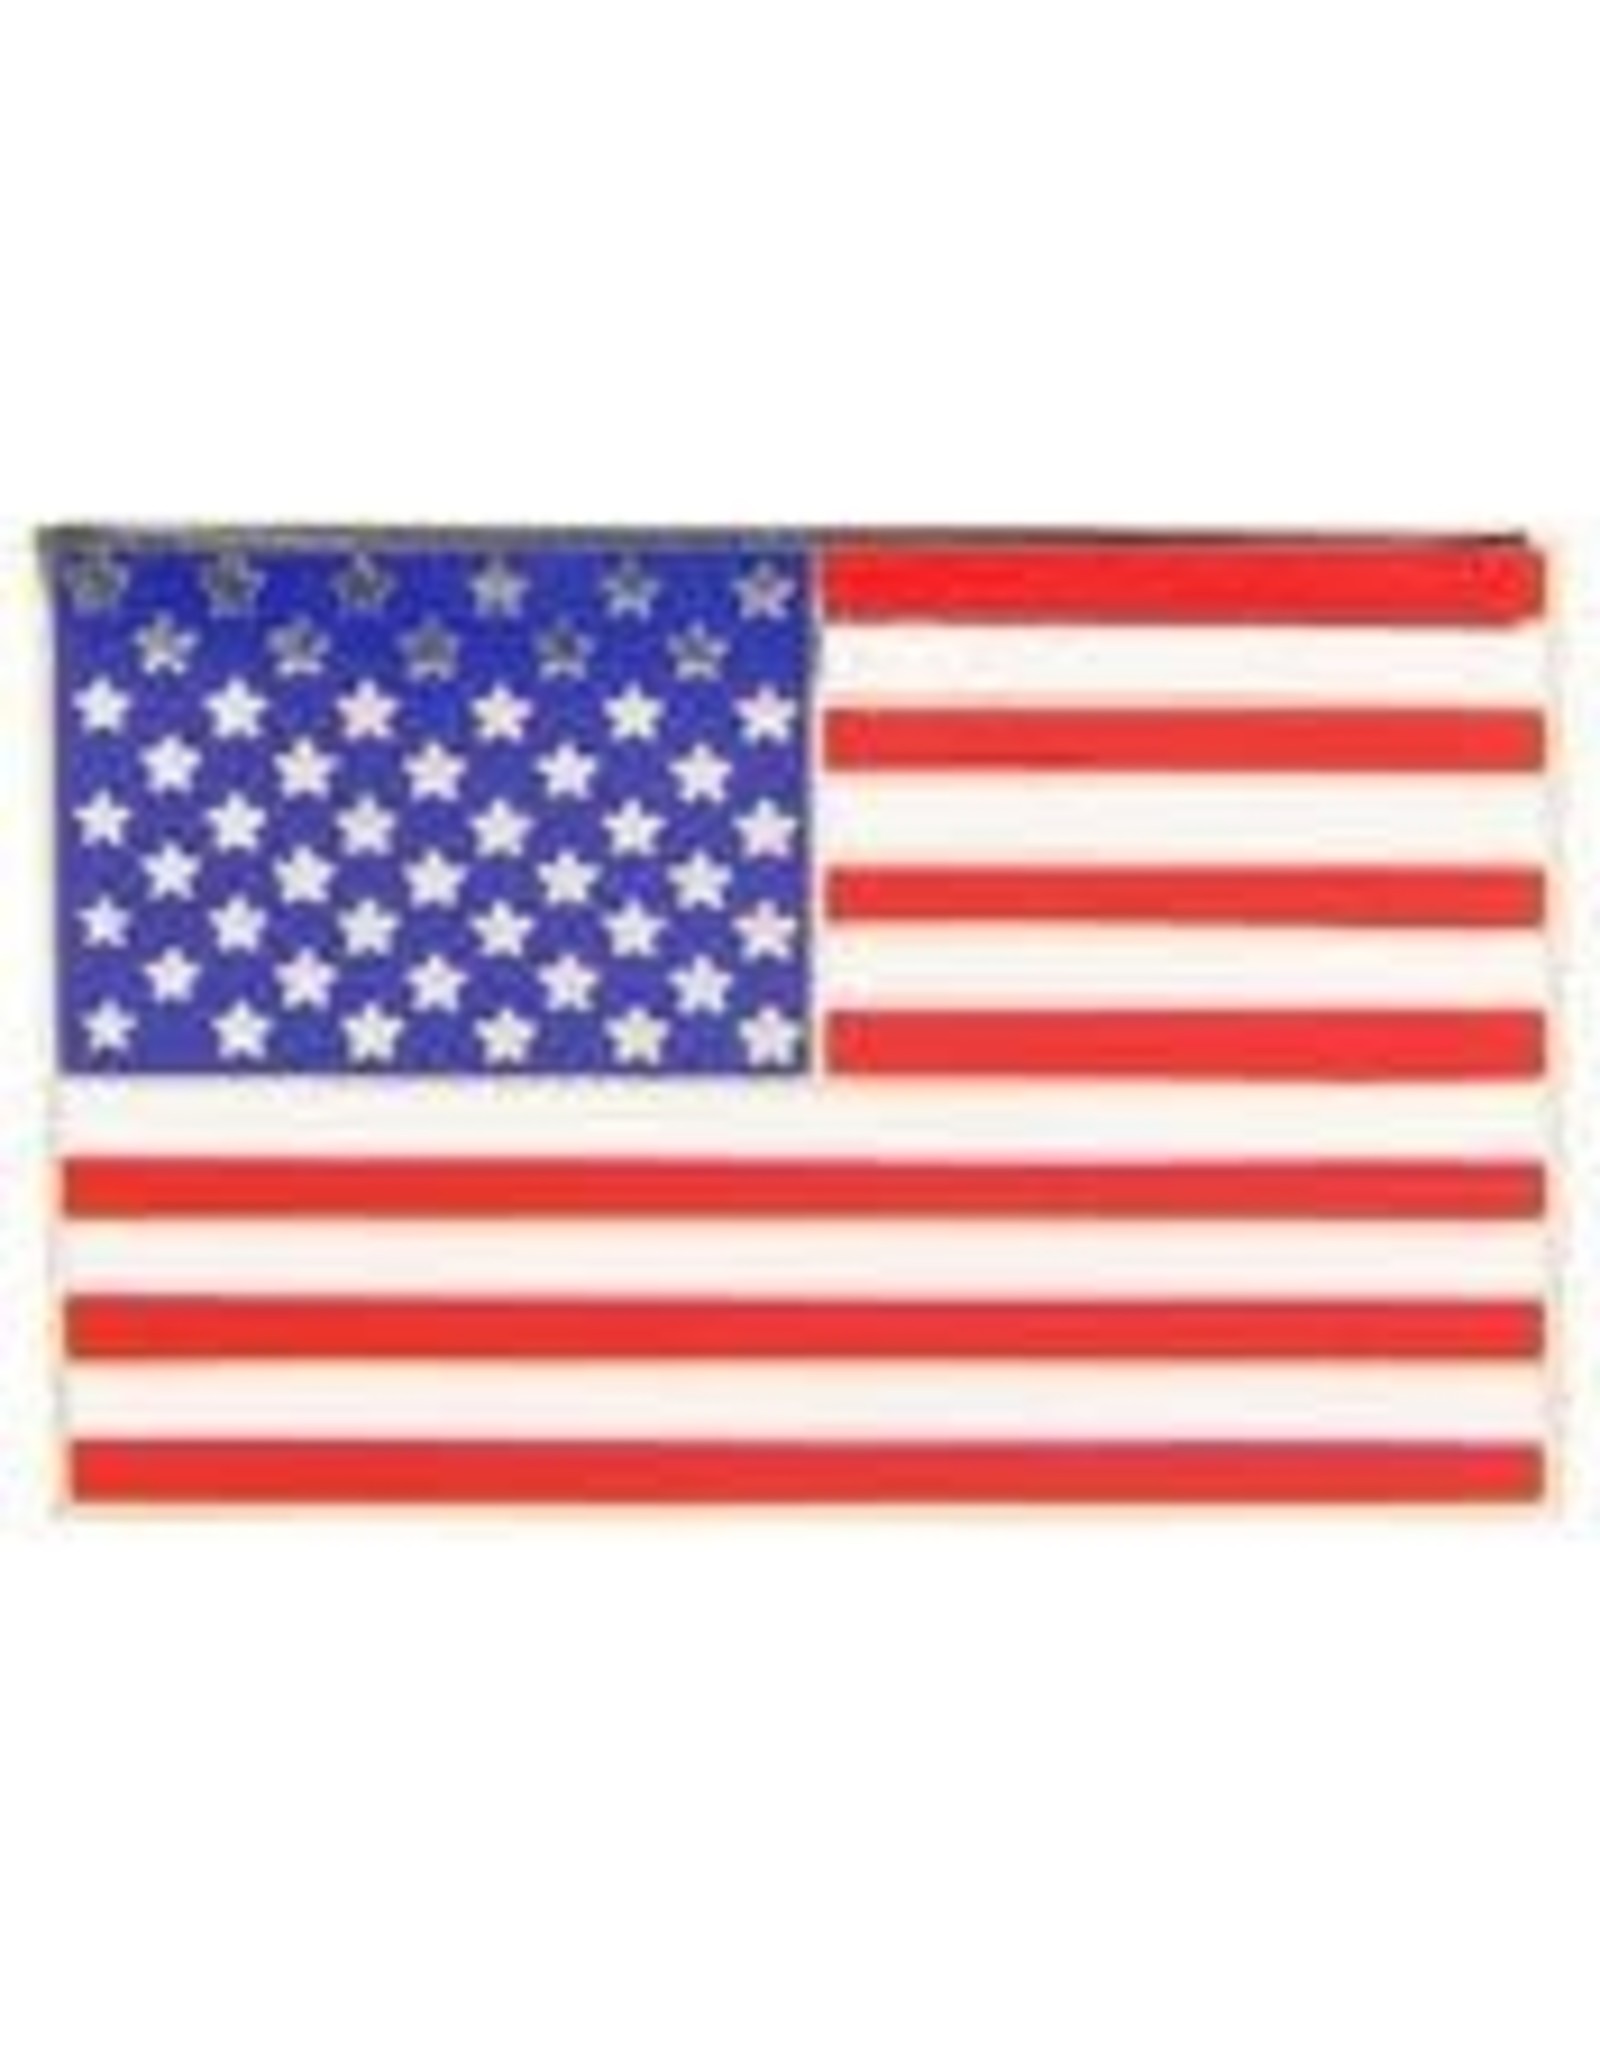 Pin - USA Flag